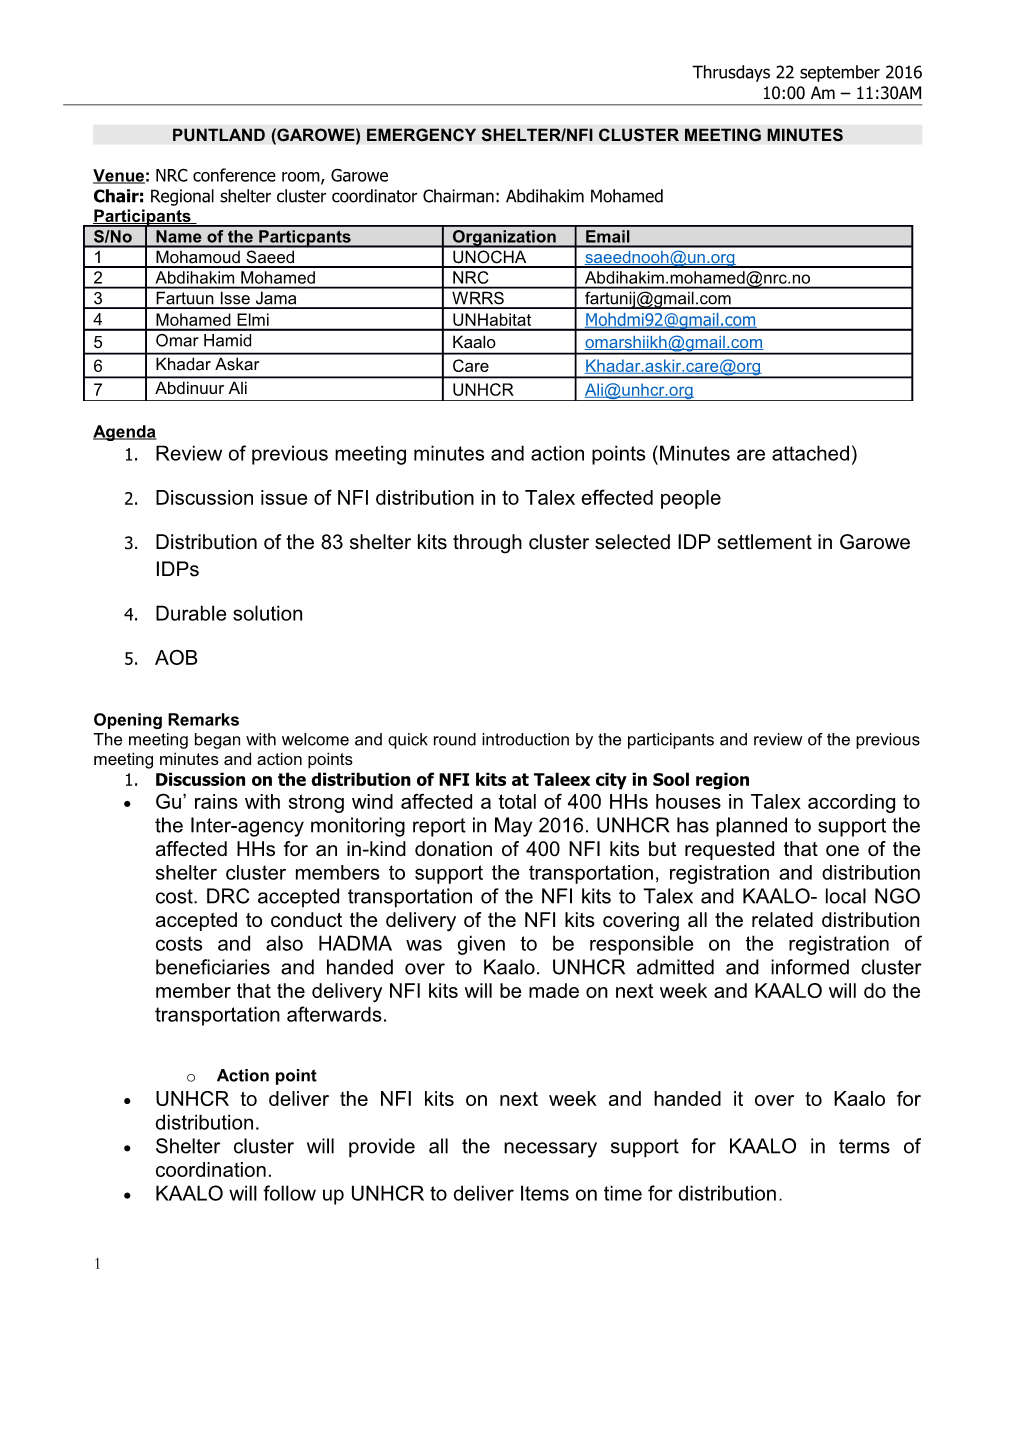 Puntland (Garowe)Emergency Shelter/Nfi Cluster Meeting Minutes